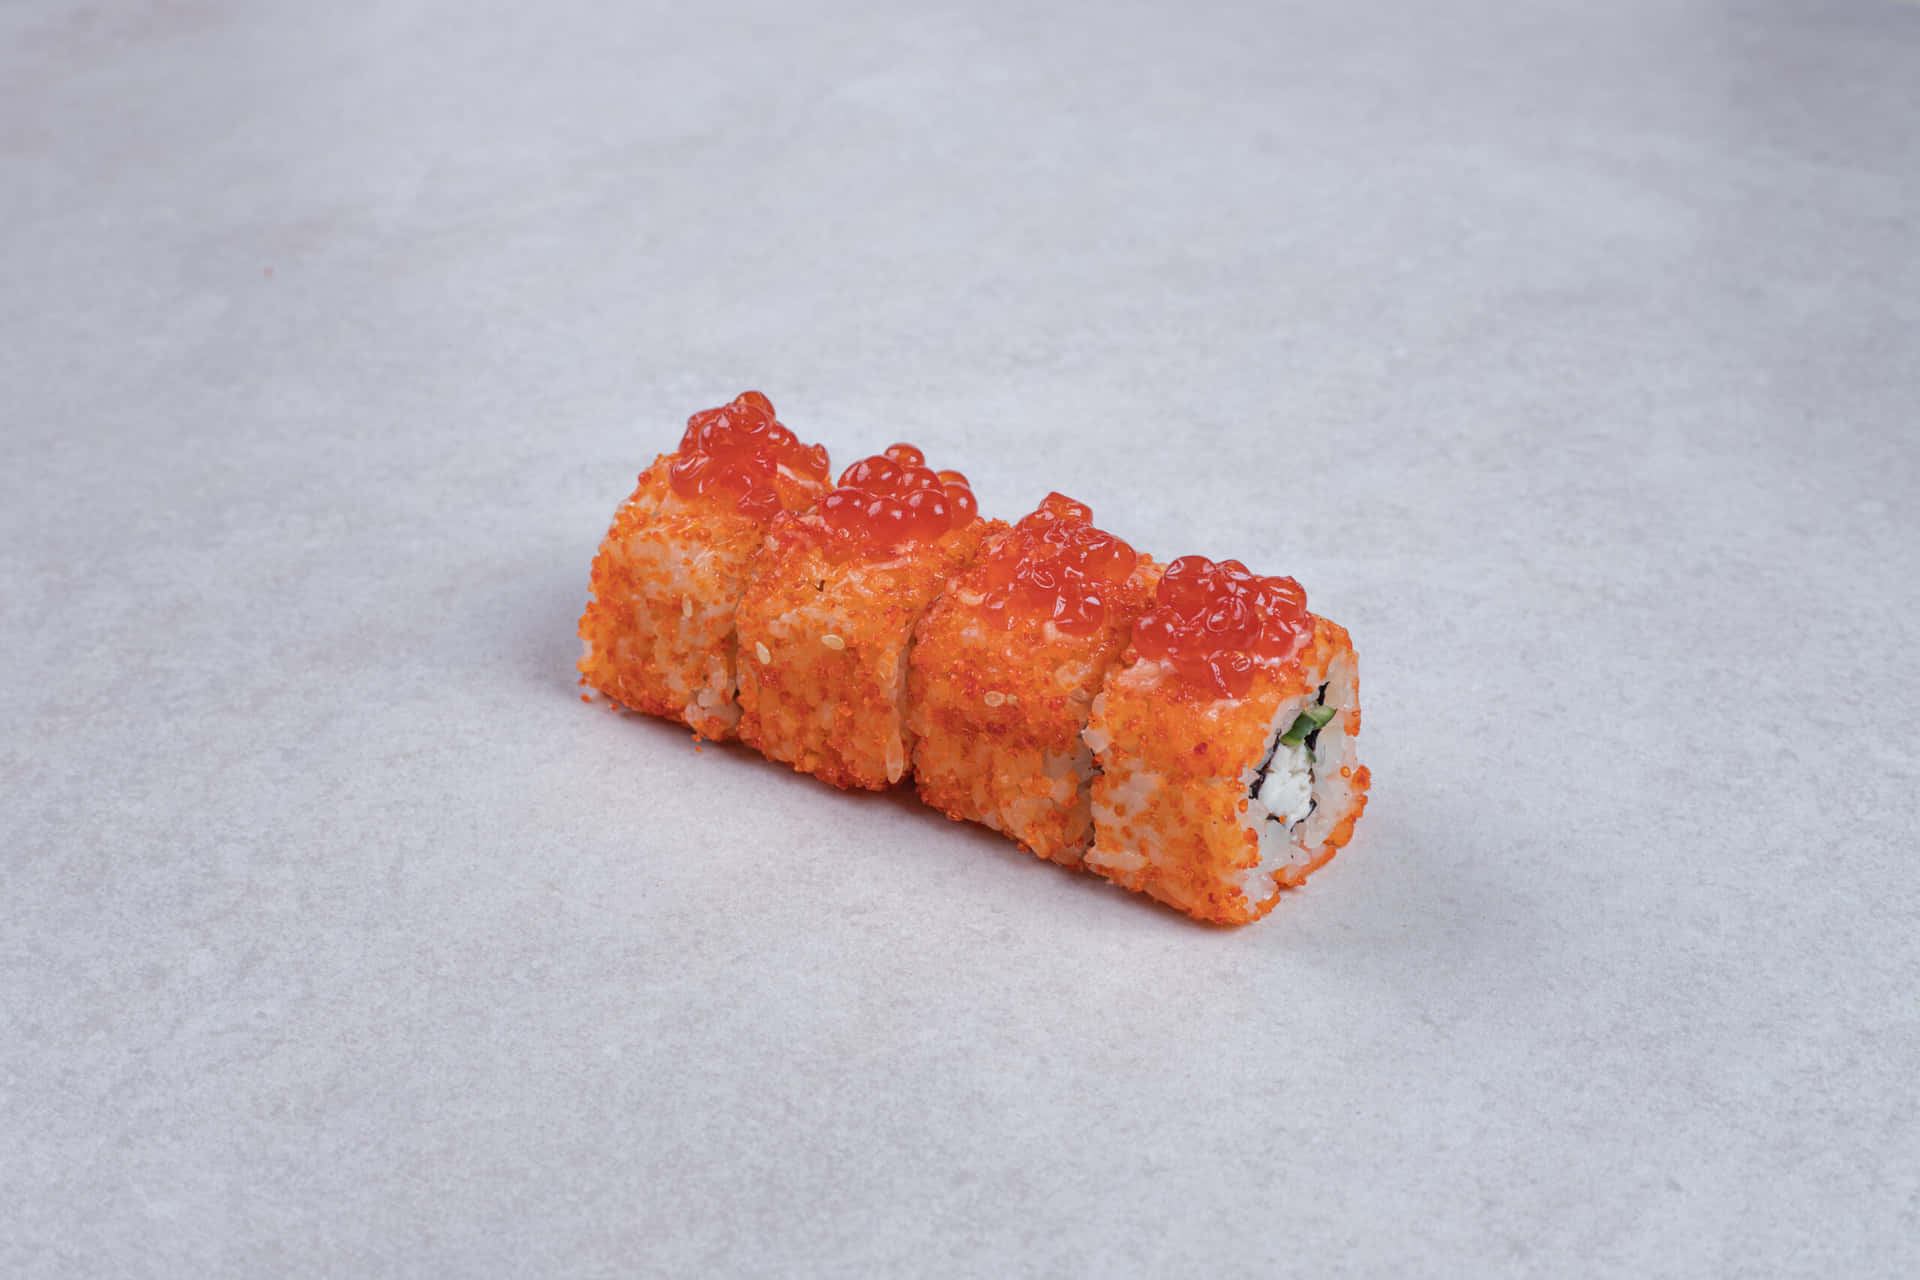 Sushi2560 X 1707 Baggrundsbillede.